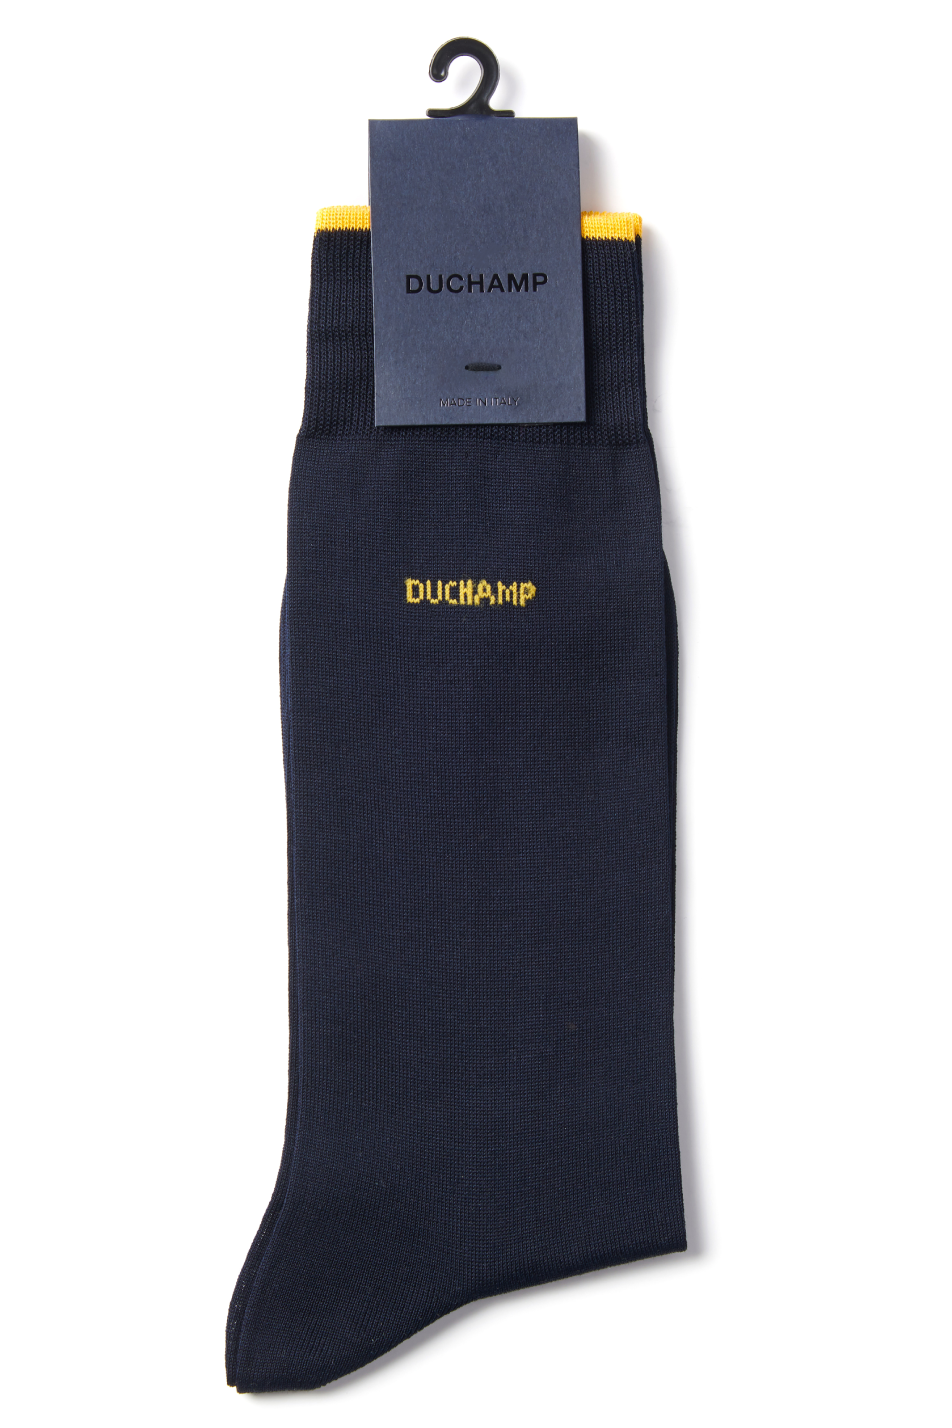 Duchamp Men's Logo Sock